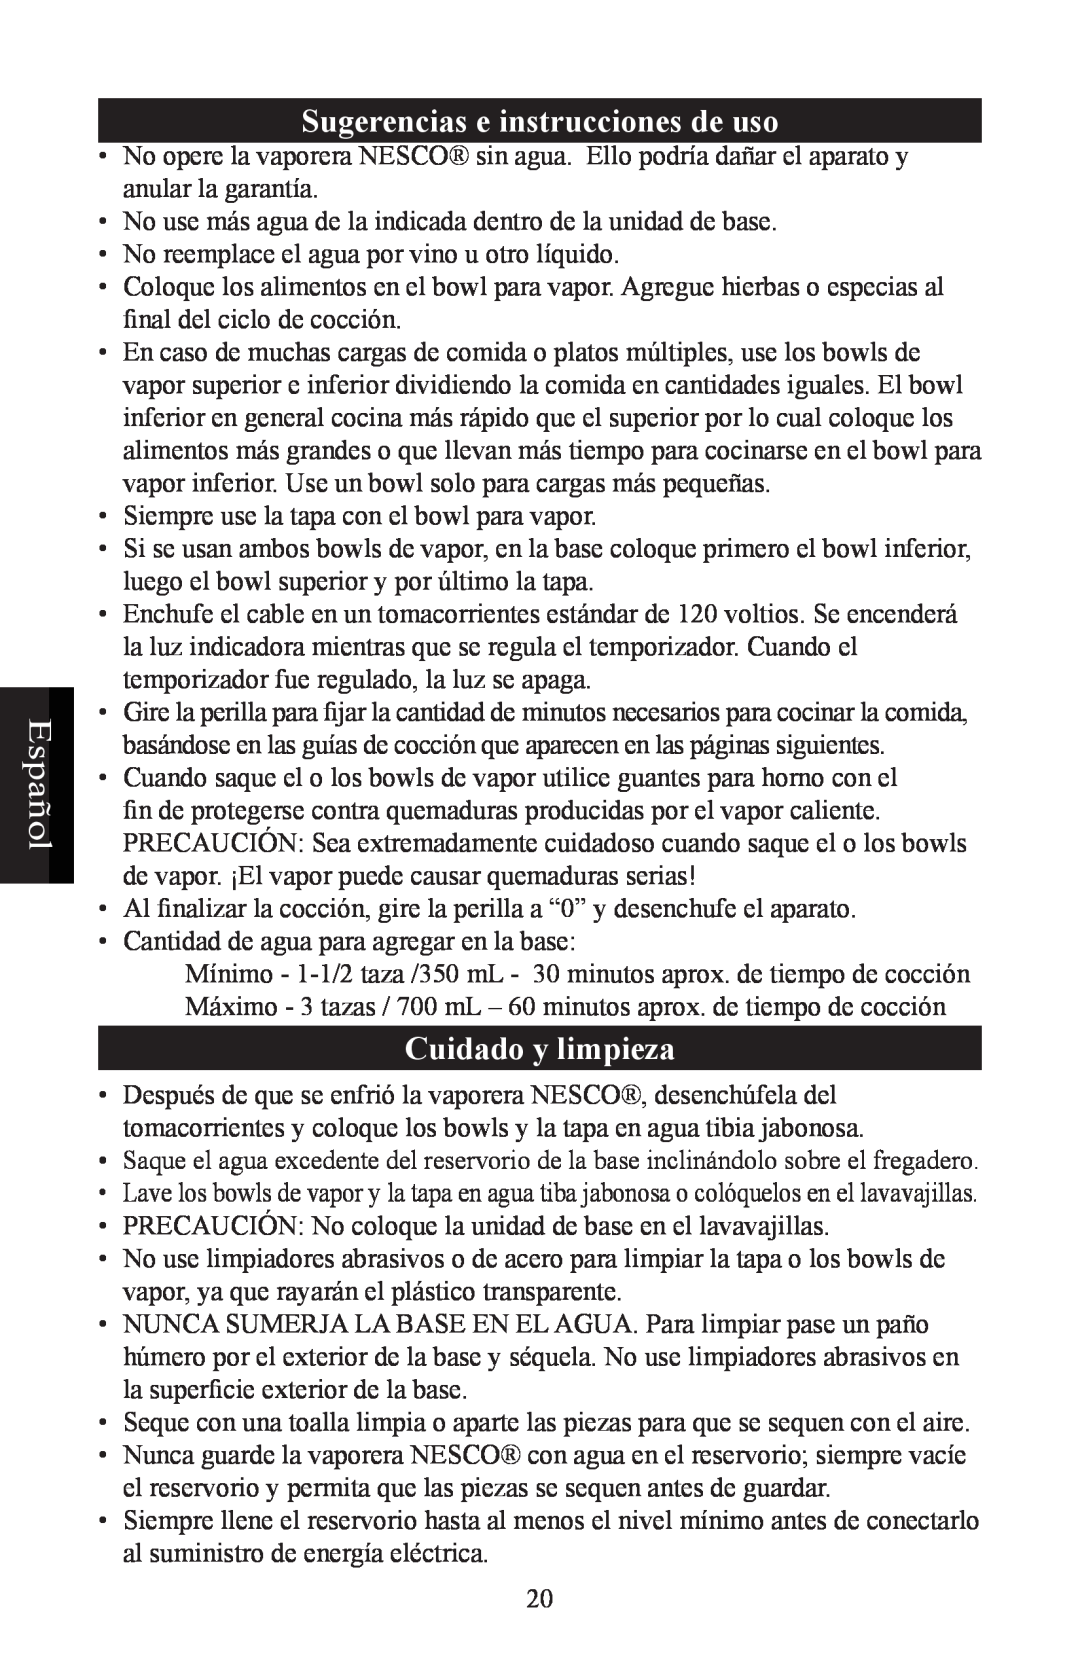 Nesco ST-24 manual Sugerencias e instrucciones de uso, Cuidado y limpieza, Español 